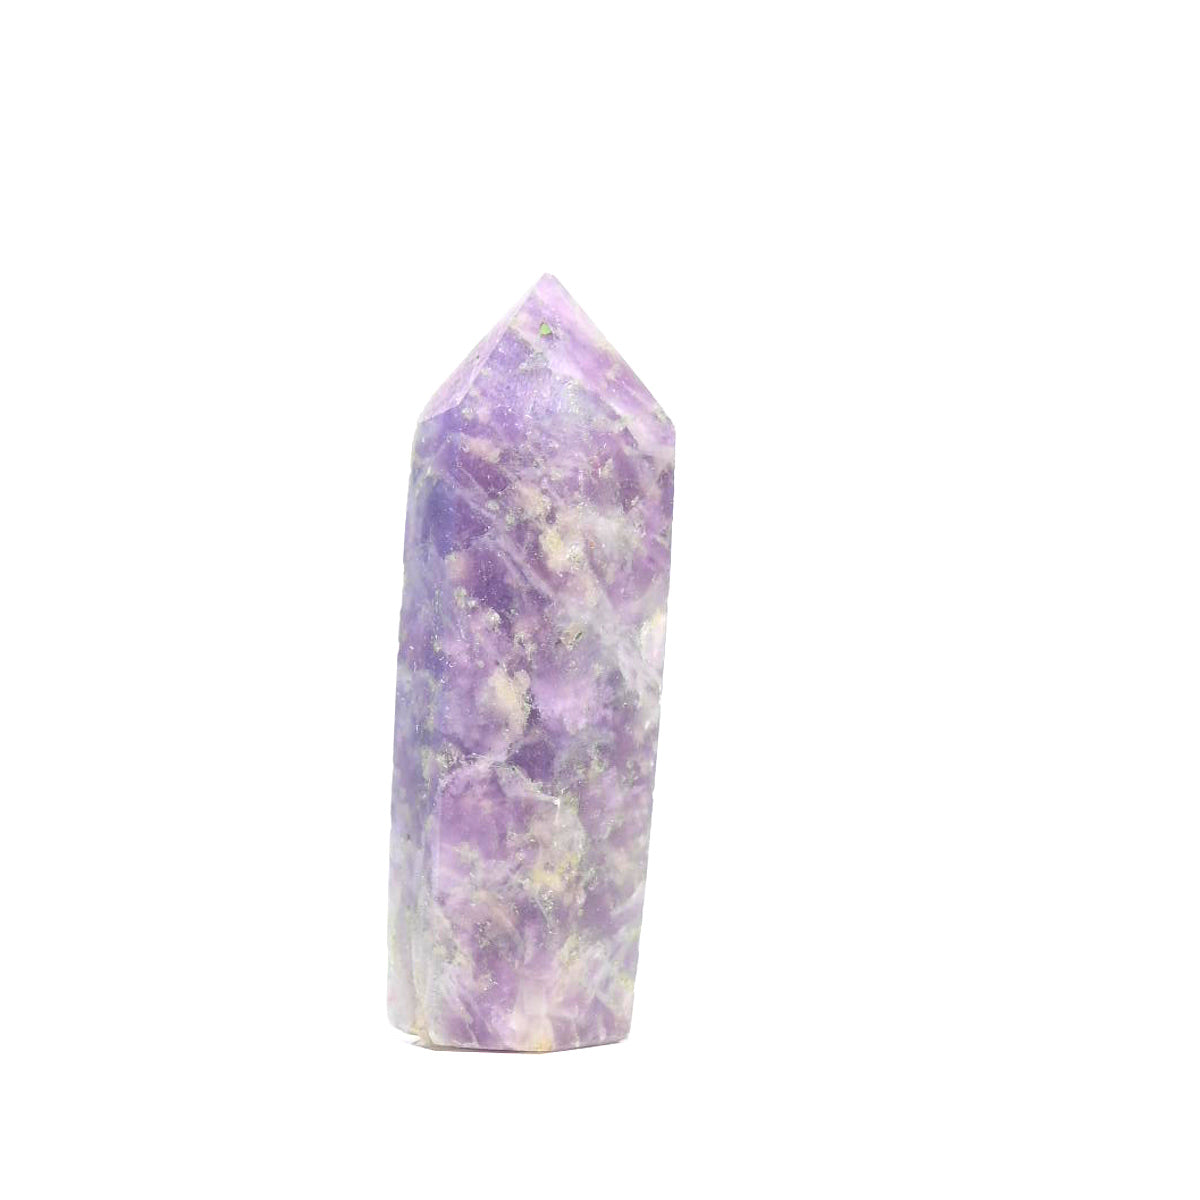 unicorn stone crystal